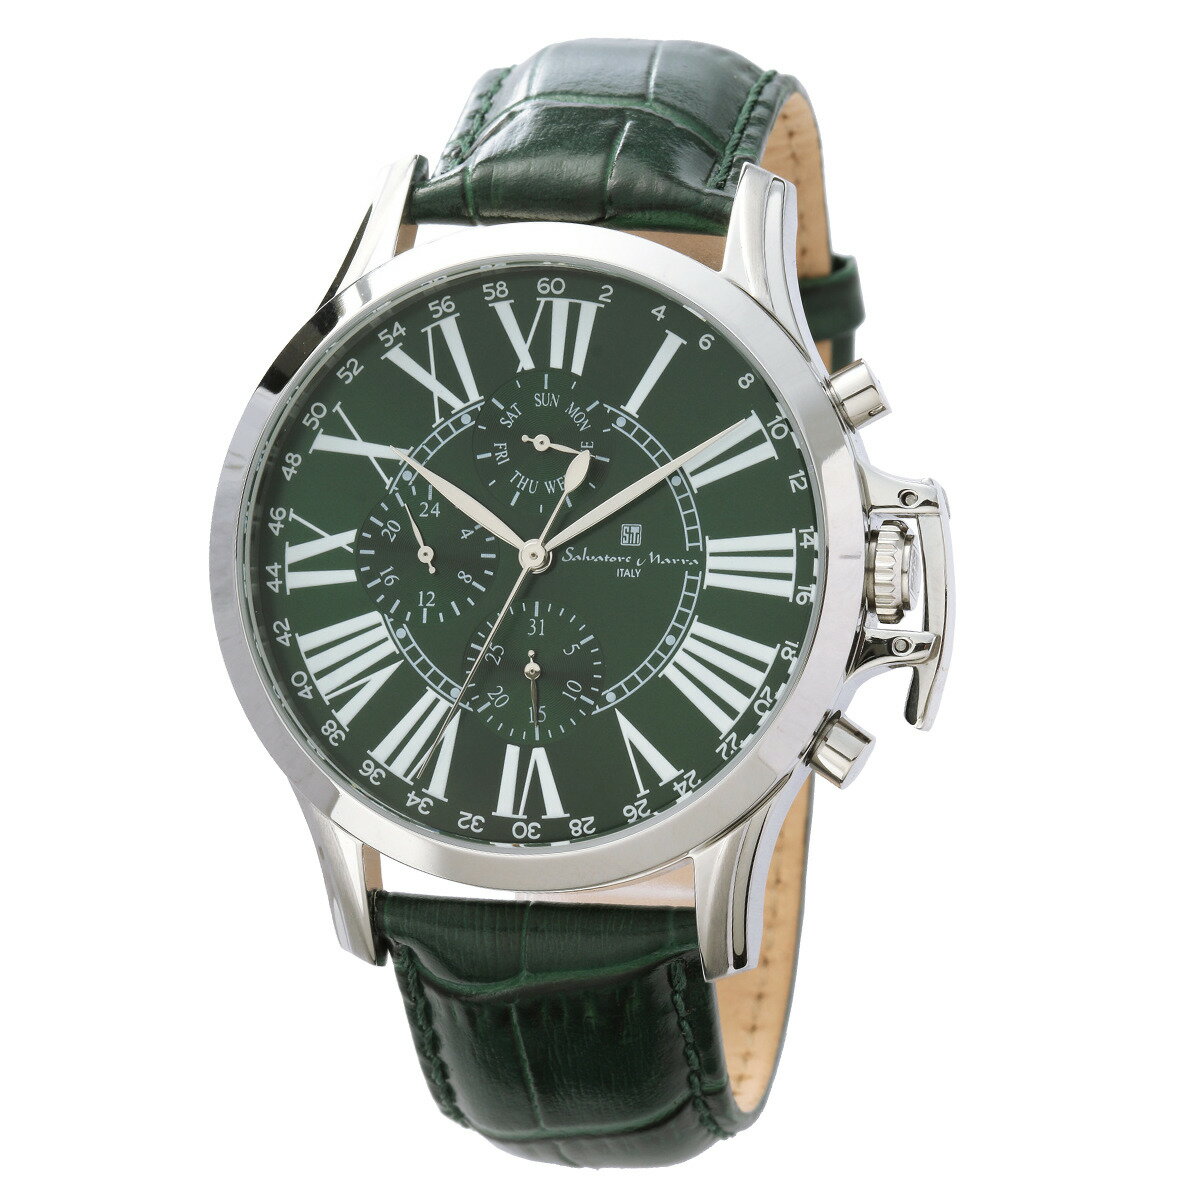 サルバトーレマーラ Salavatore Marra 腕時計 SM23101 SSGR マルチファンクション クオーツ メンズ腕時計 レザーベルト アナログ表示 3気圧防水 紳士用 時計